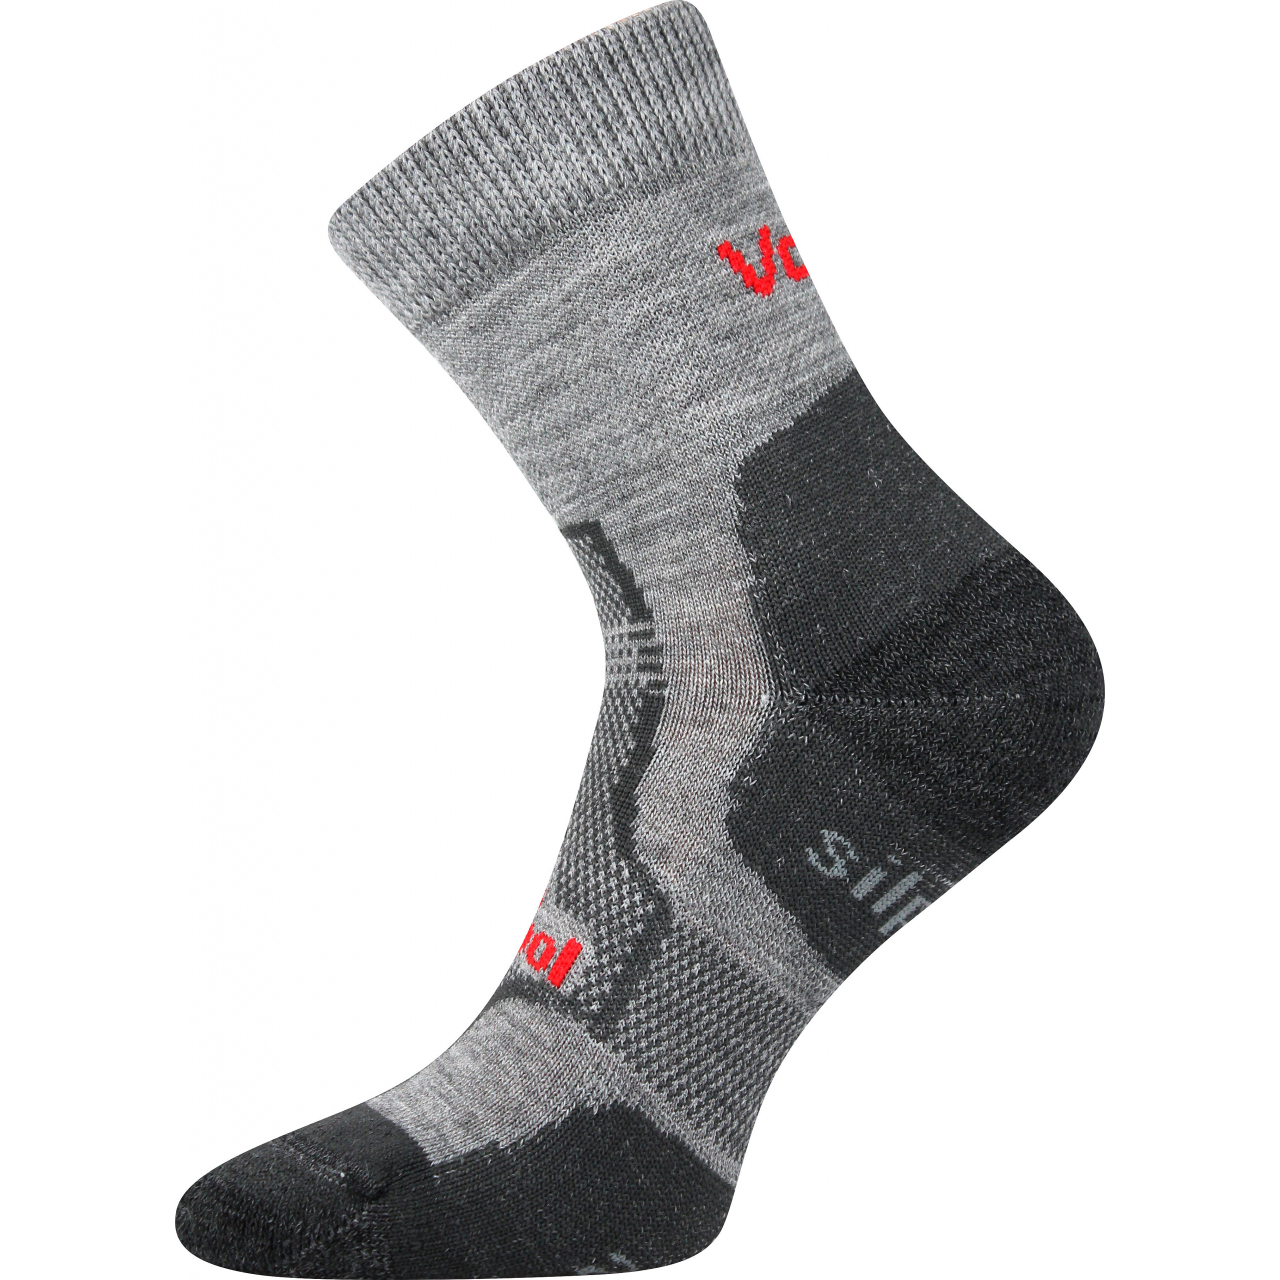 Ponožky unisex zimní Voxx Granit - světle šedé, 47-50